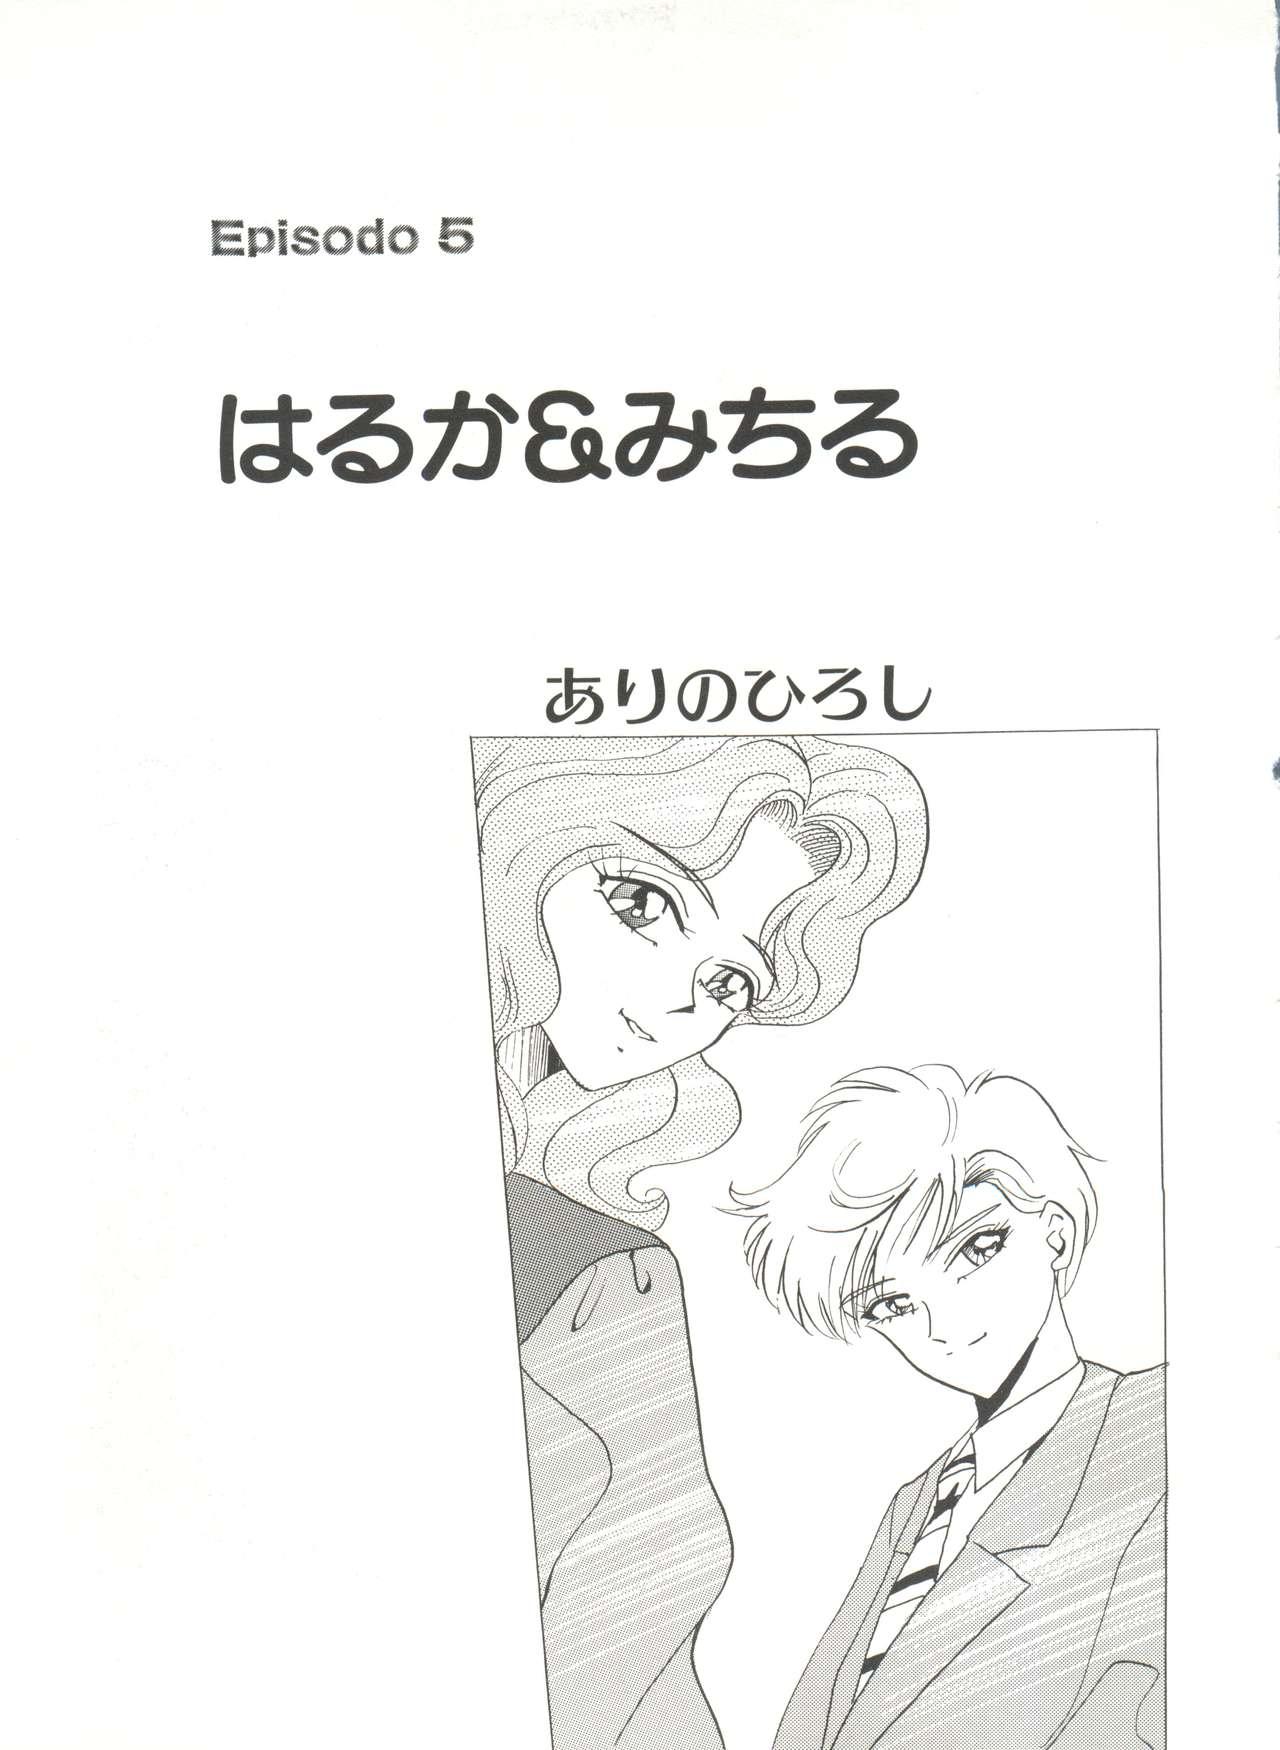 Bishoujo Doujinshi Anthology 16 - Moon Paradise 10 Tsuki no Rakuen 73